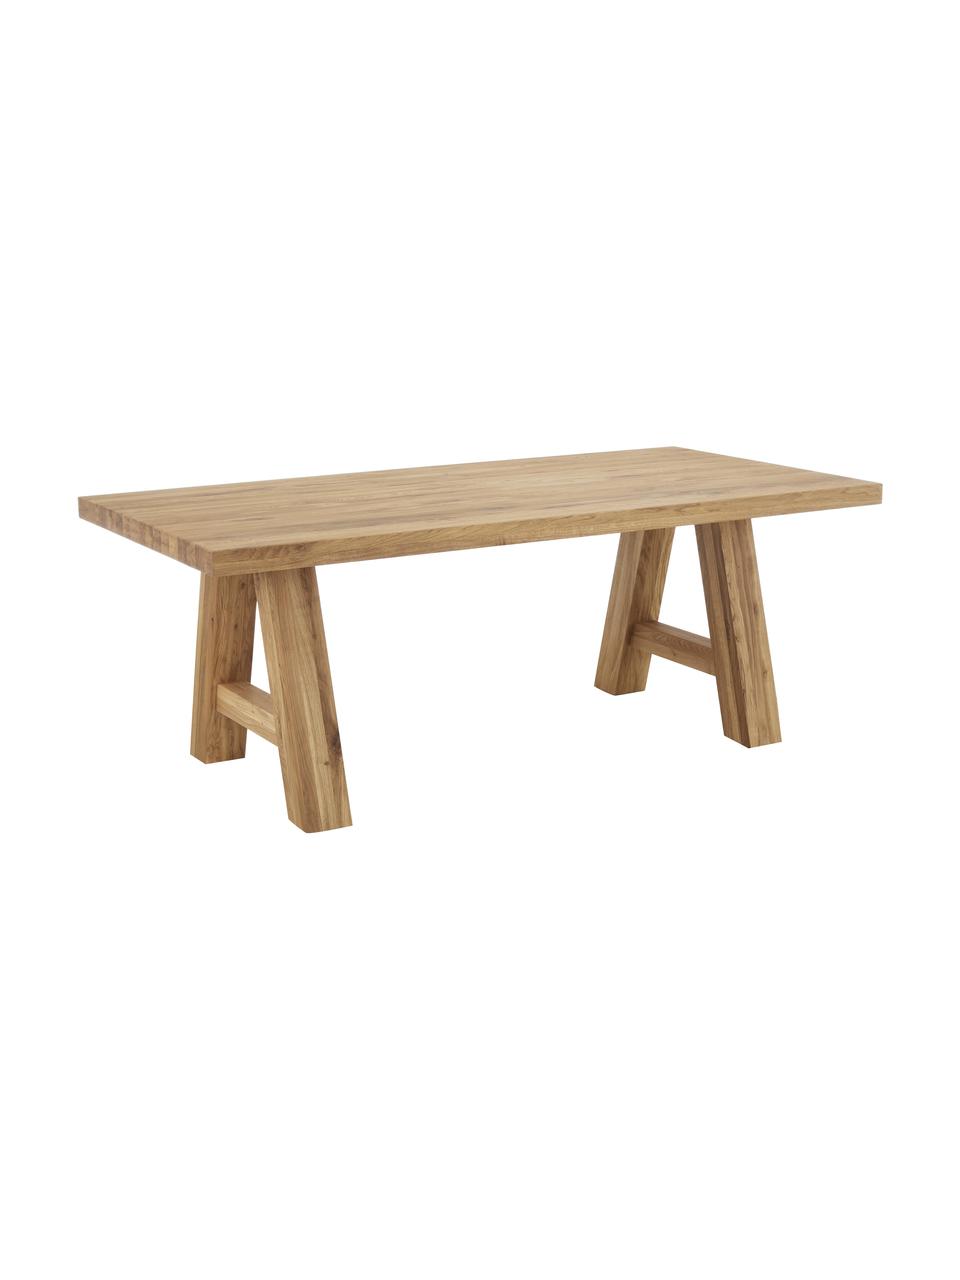 Jedálenský stôl z dubového dreva Ashton, Masívne dubové drevo, ošetrené olejom
100% FSC drevo z udržateľného lesného hospodárstva, Dubové drevo, ošetrené olejom, Š 200 x H 100 cm